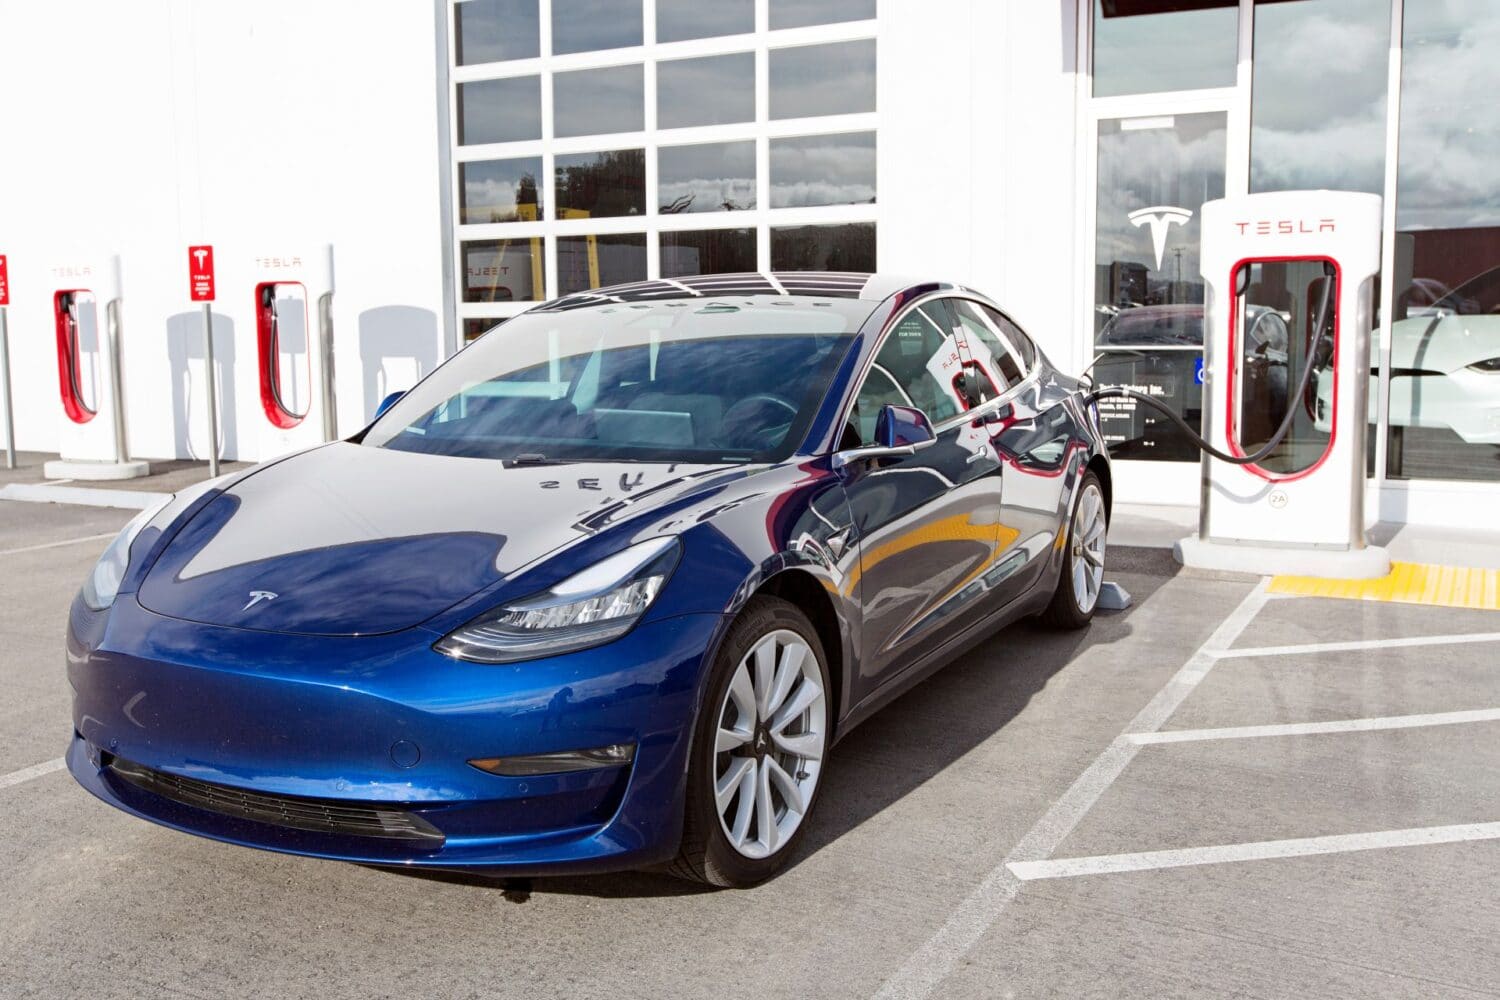 Tesla startet Model 3 Kundenauslieferungen in China - 3.000 E-Autos/Woche geplant